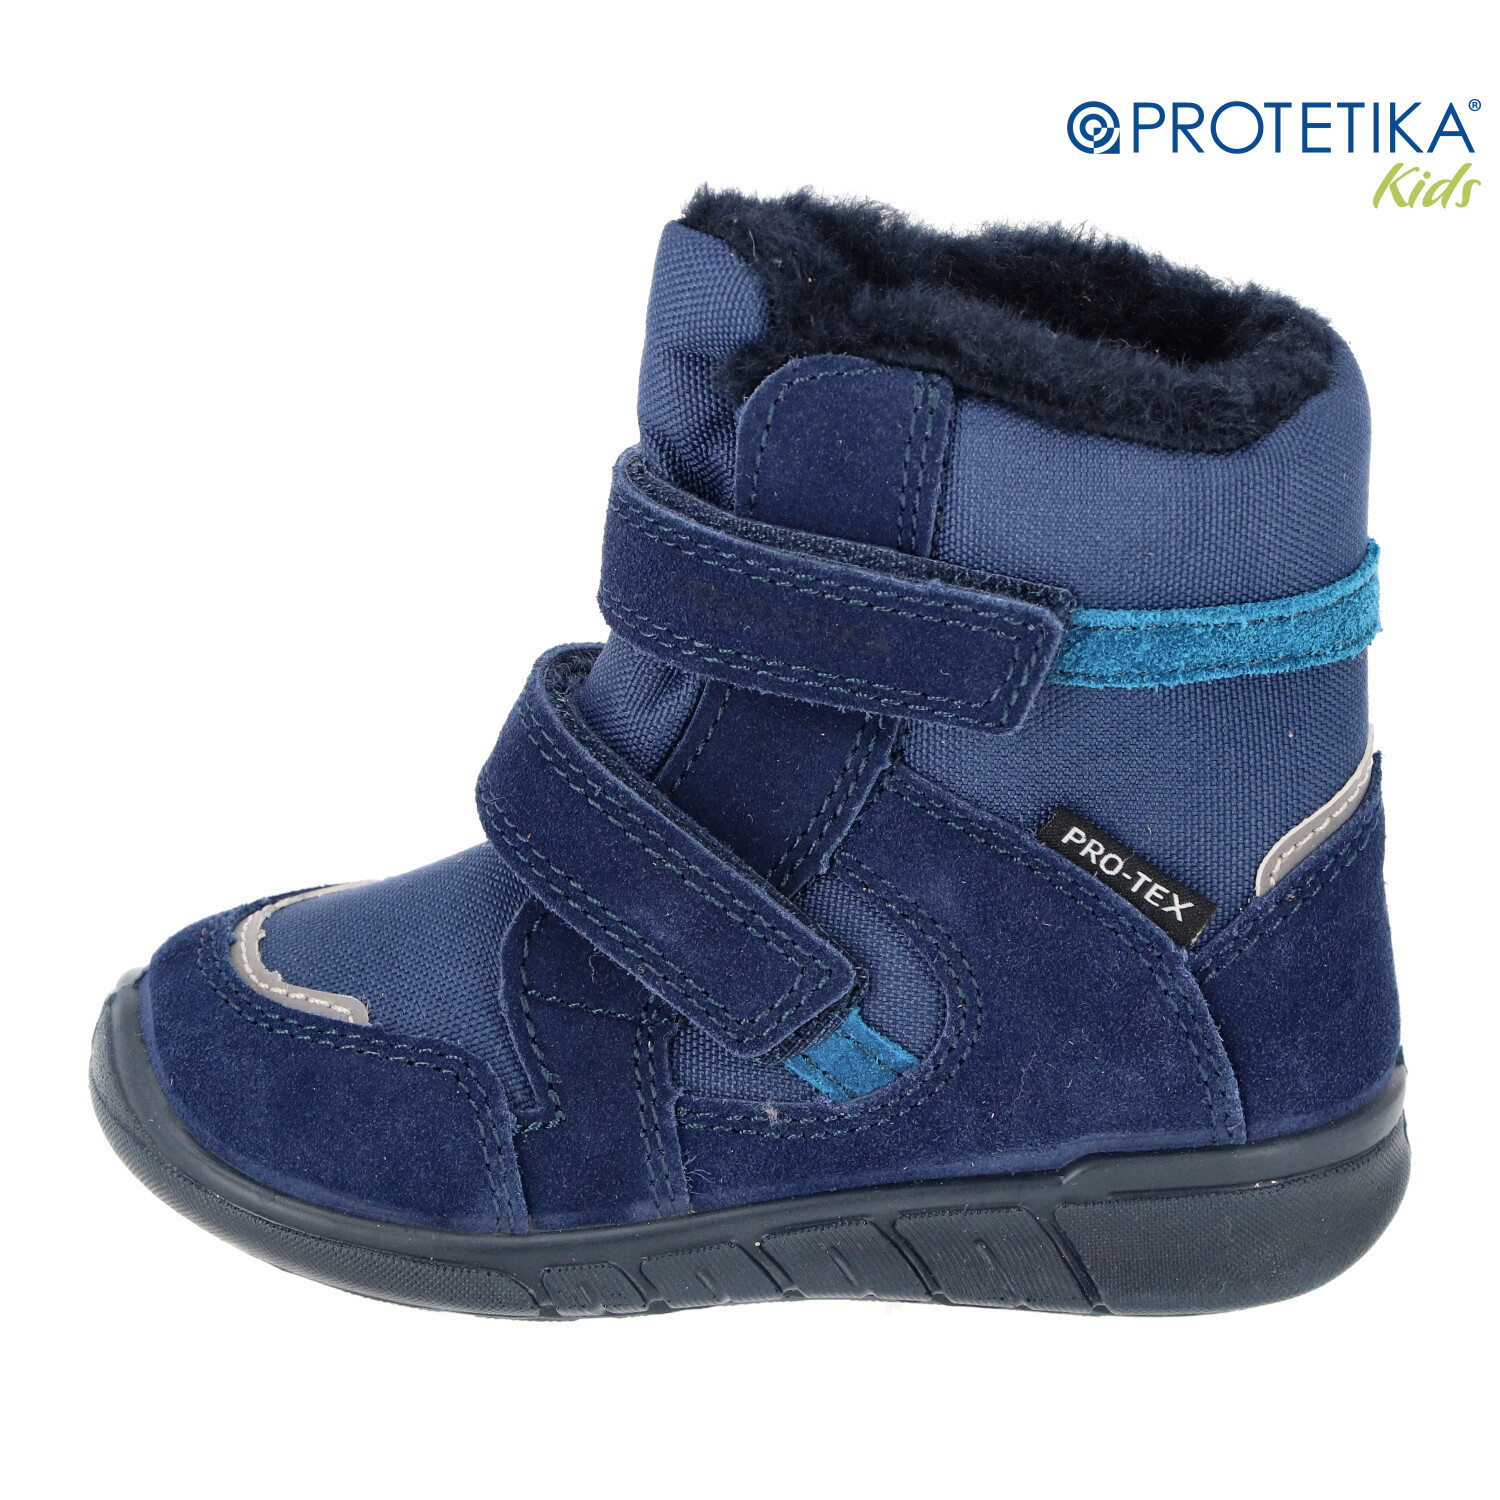 Protetika - zimné topánky s membránou PRO-tex NATAN navy - zateplené